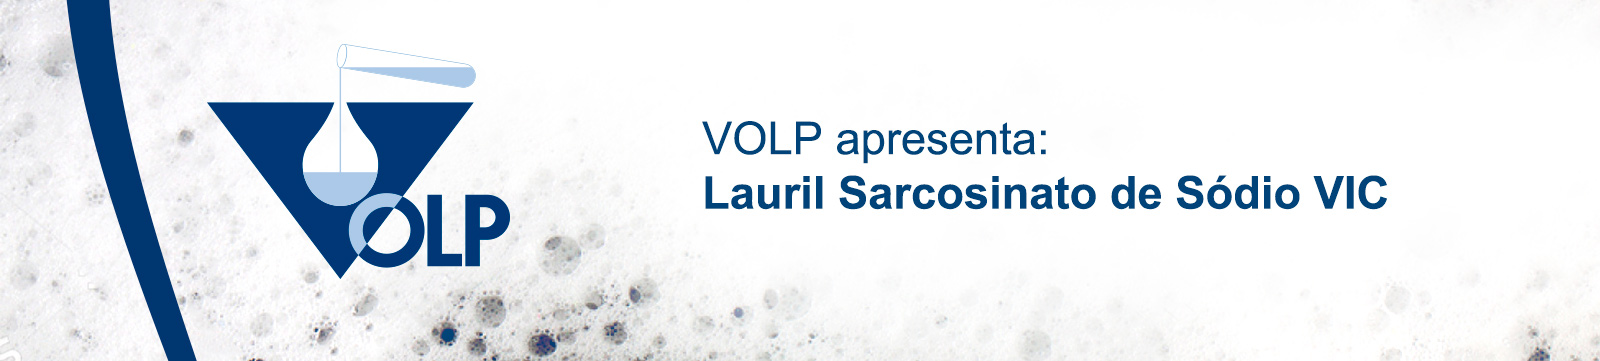 VOLP apresenta:  Lauril Sarcosinato de Sódio VIC